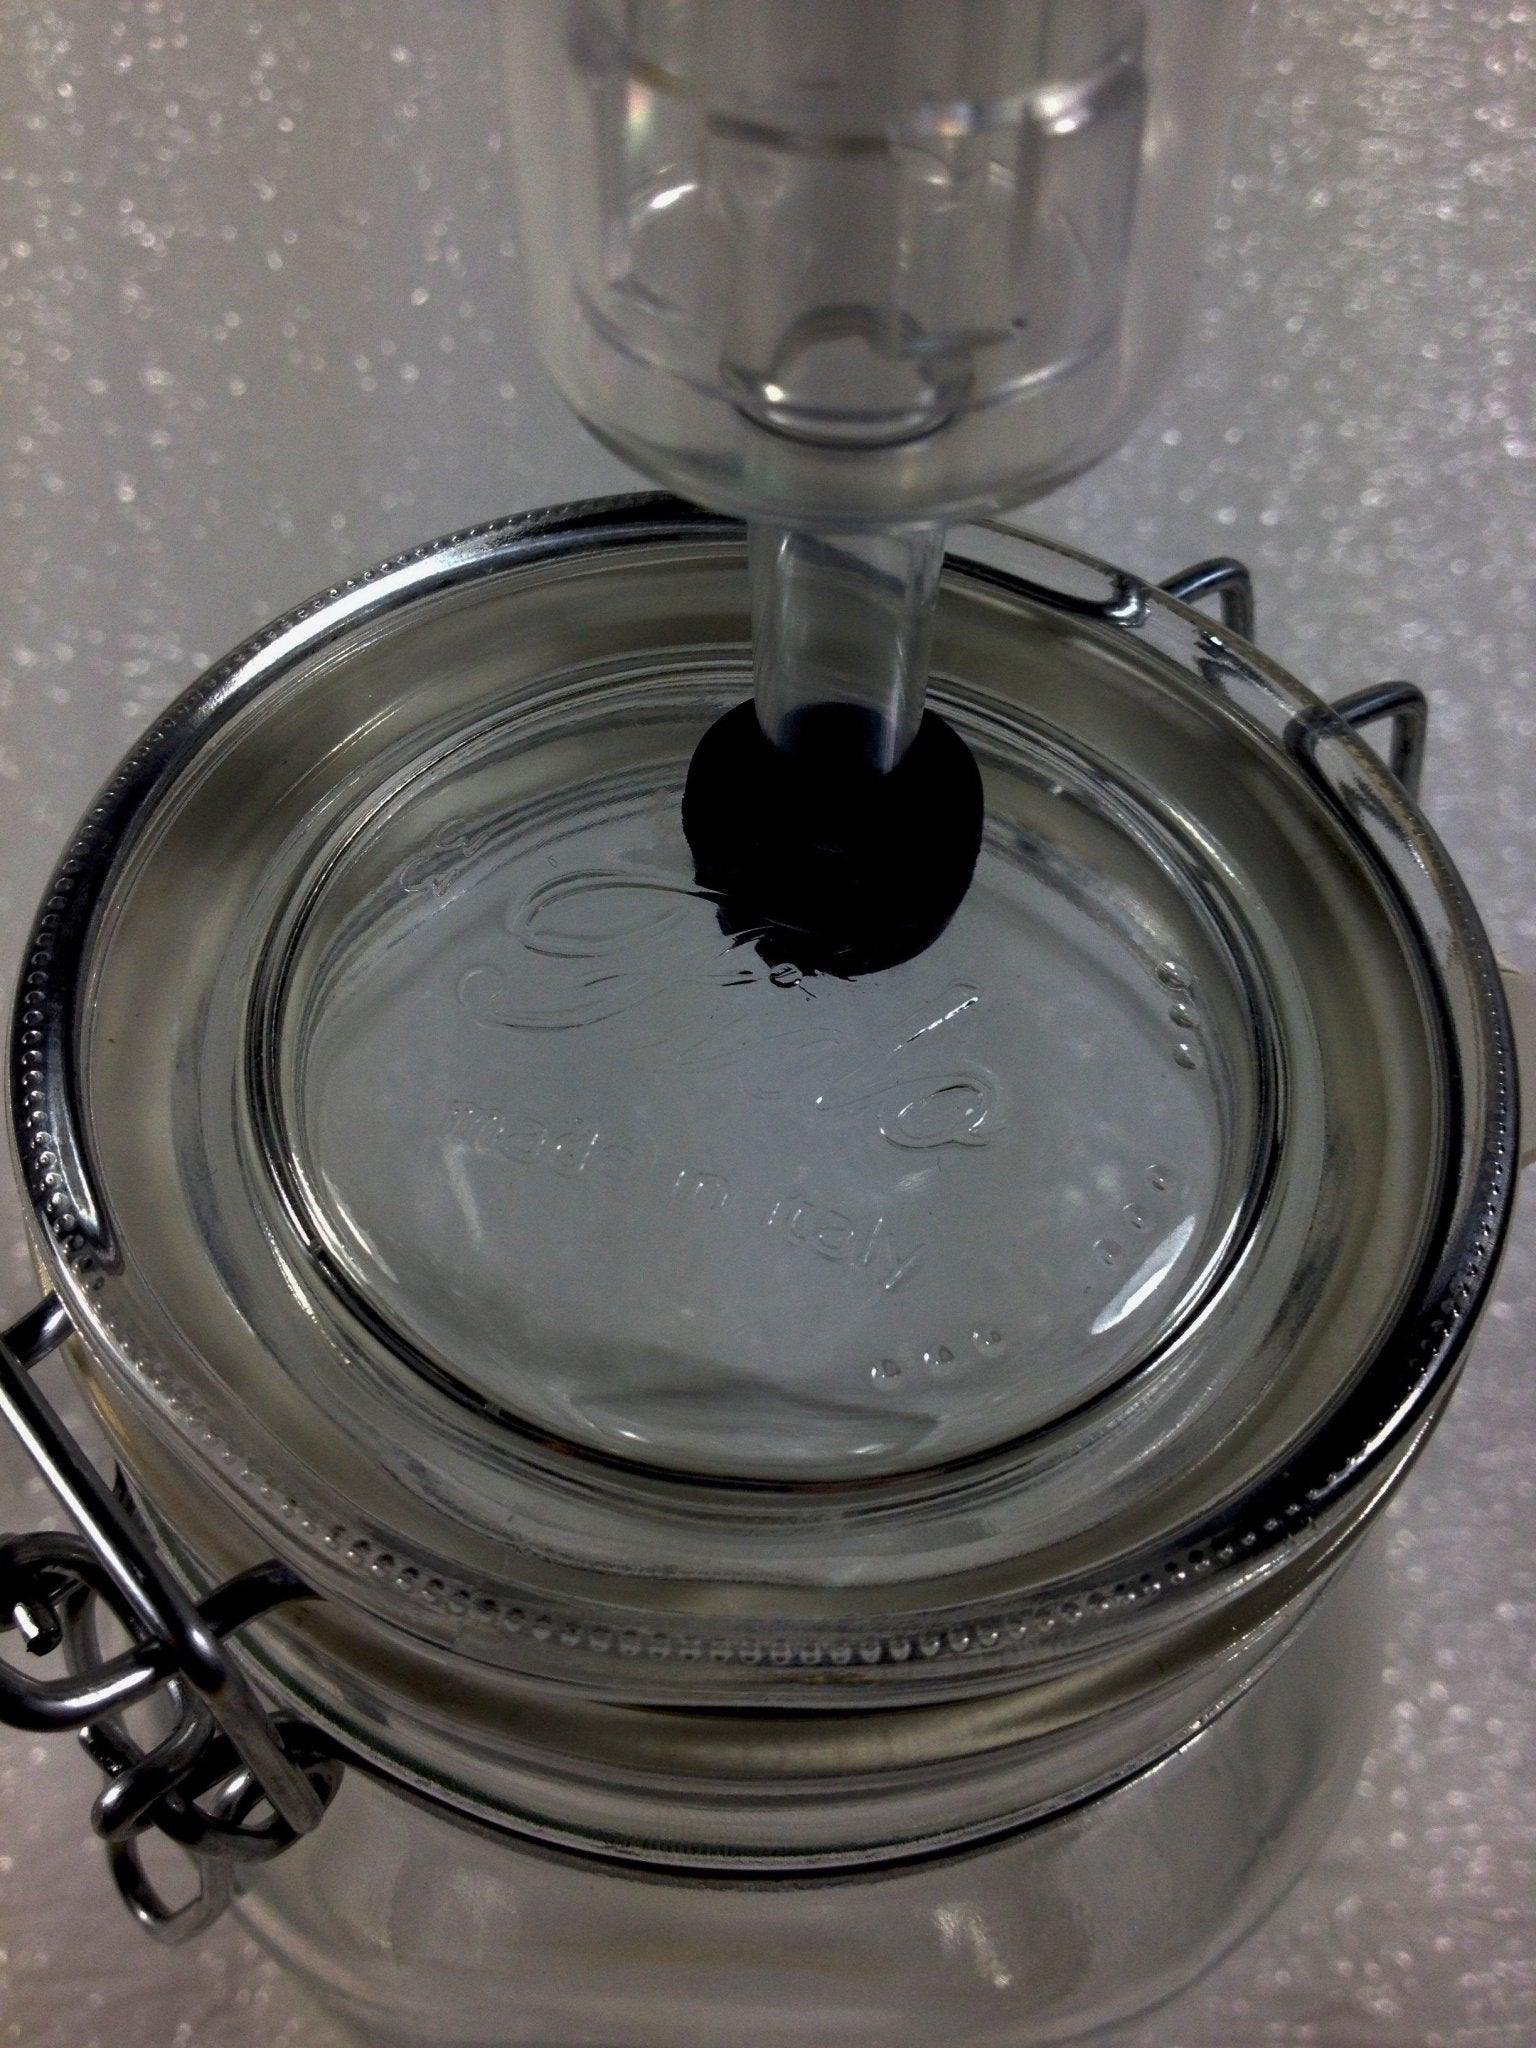 500ml Le Parfait Fermenting Jar With Fermenting Lid BPA Free - OzFarmer